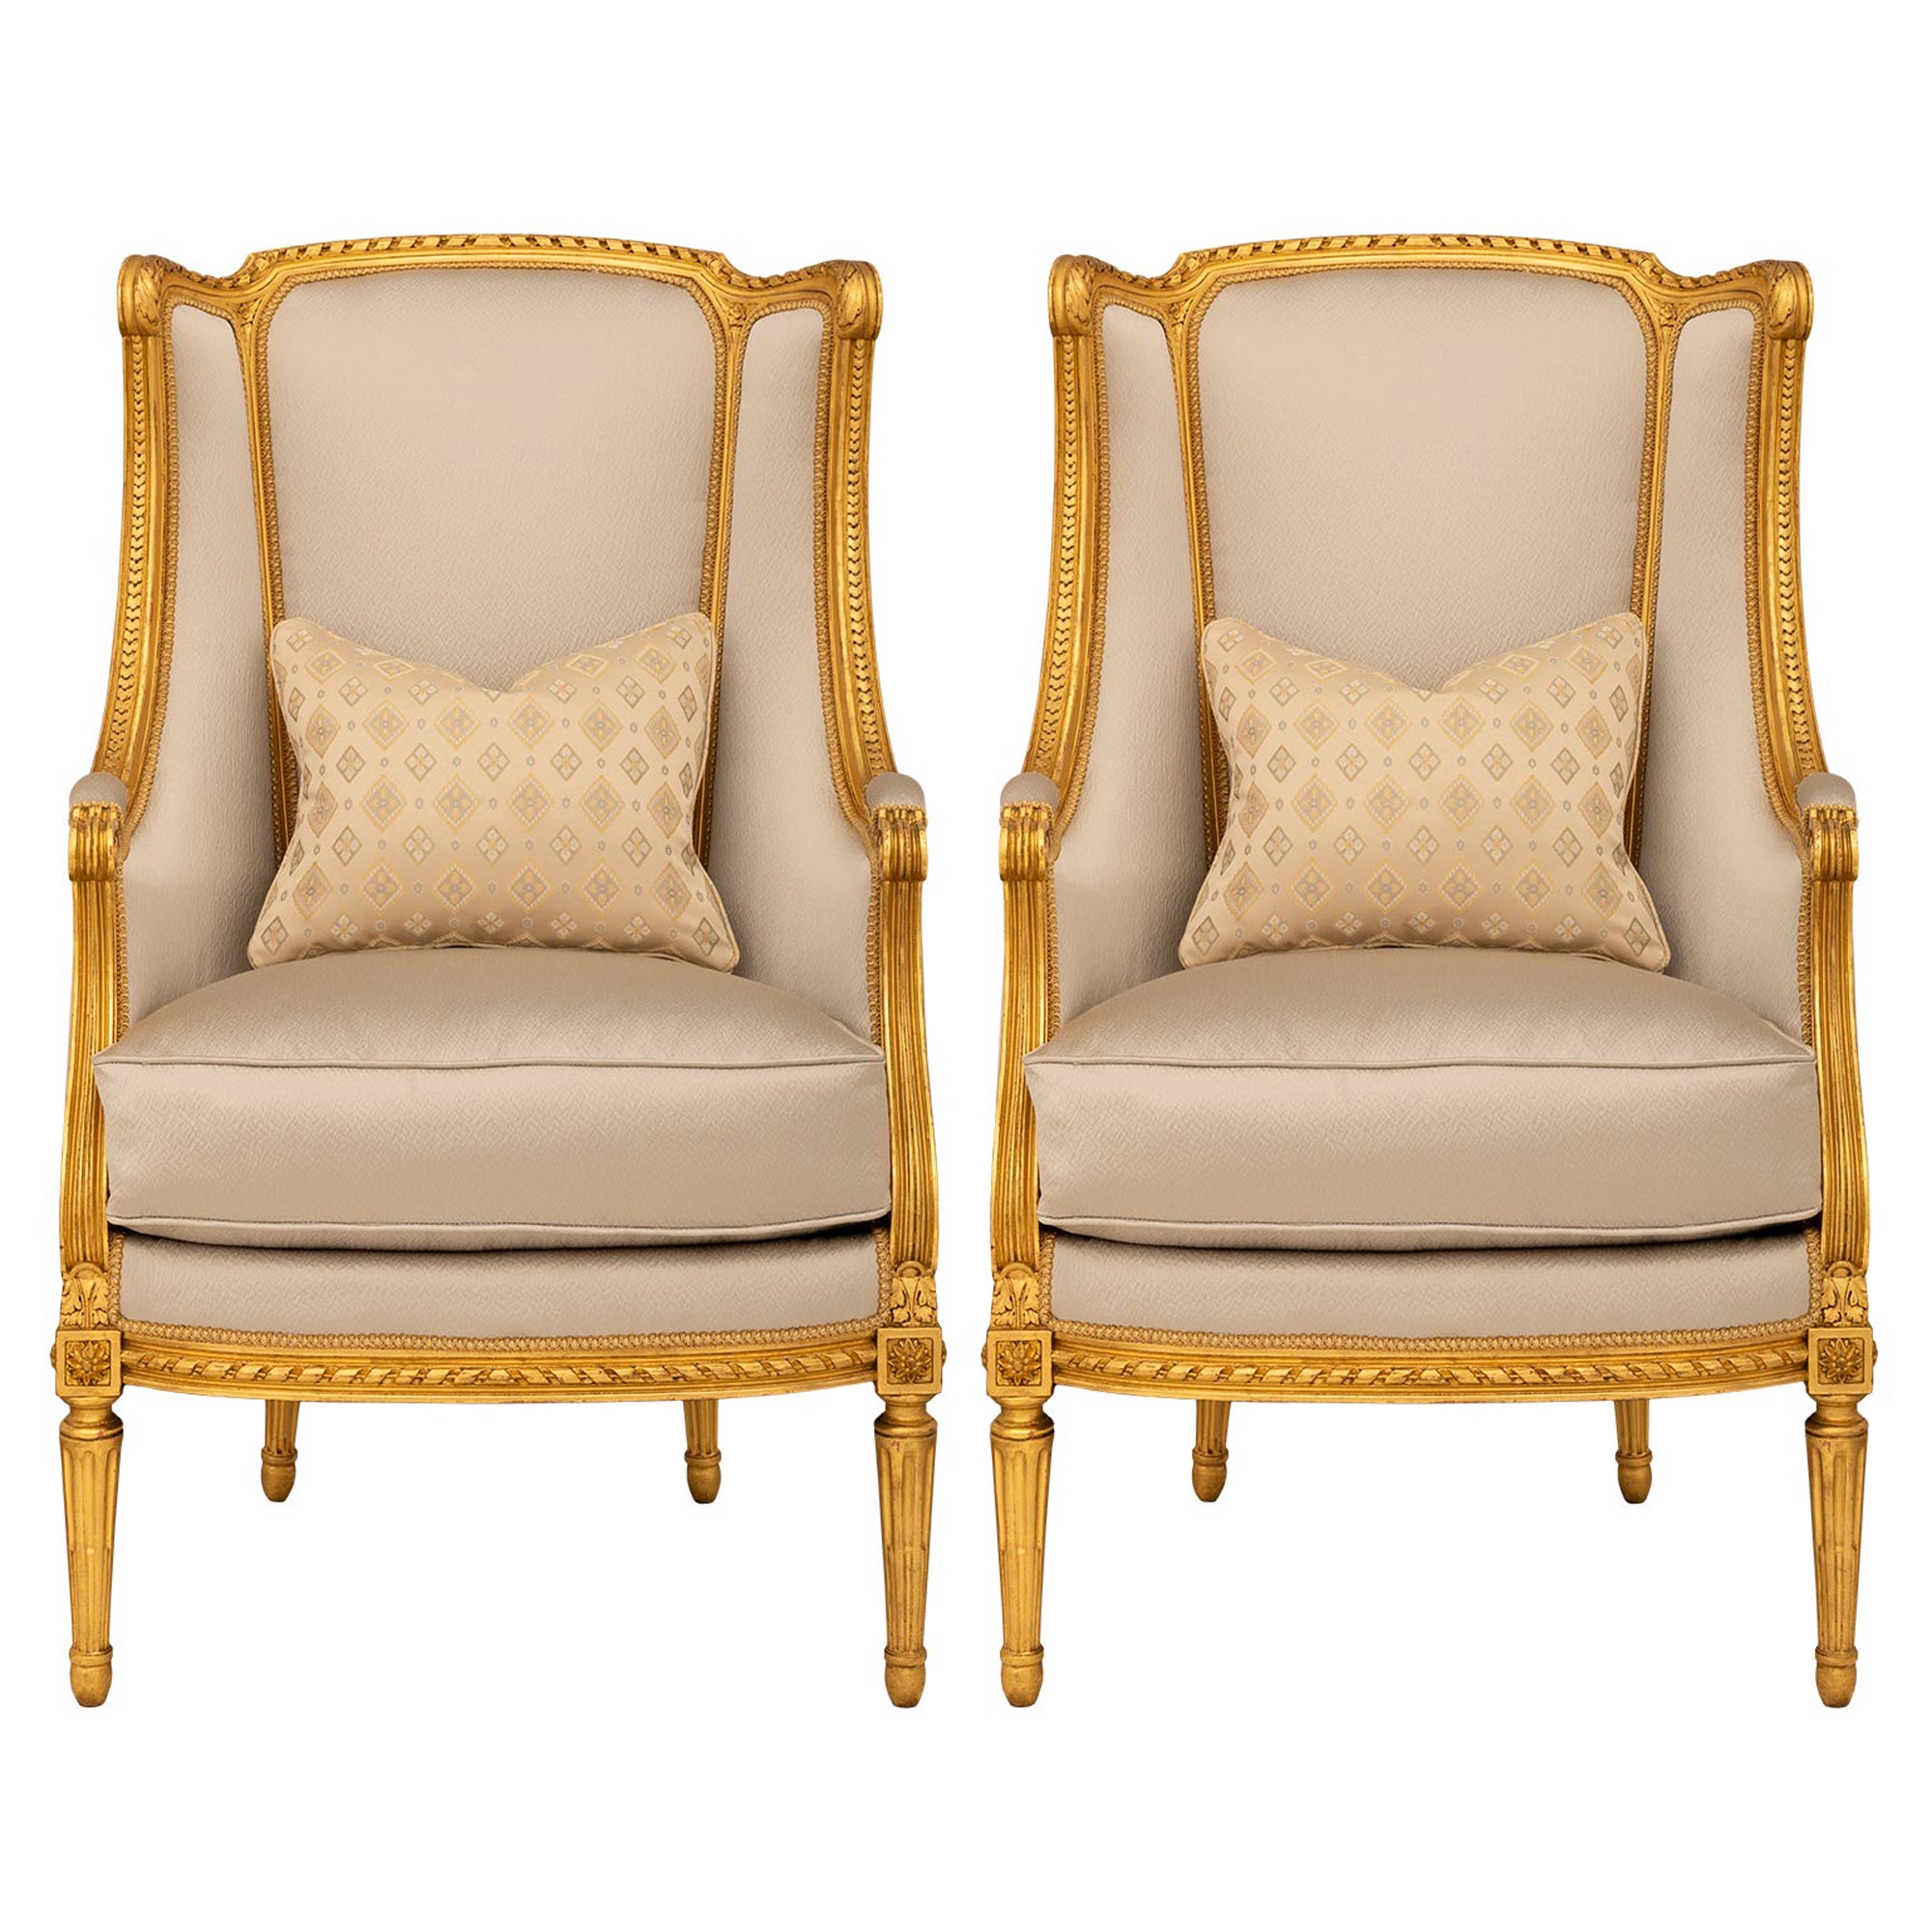 Paire de fauteuils Bergère en bois doré de style Louis XVI du XIXe siècle